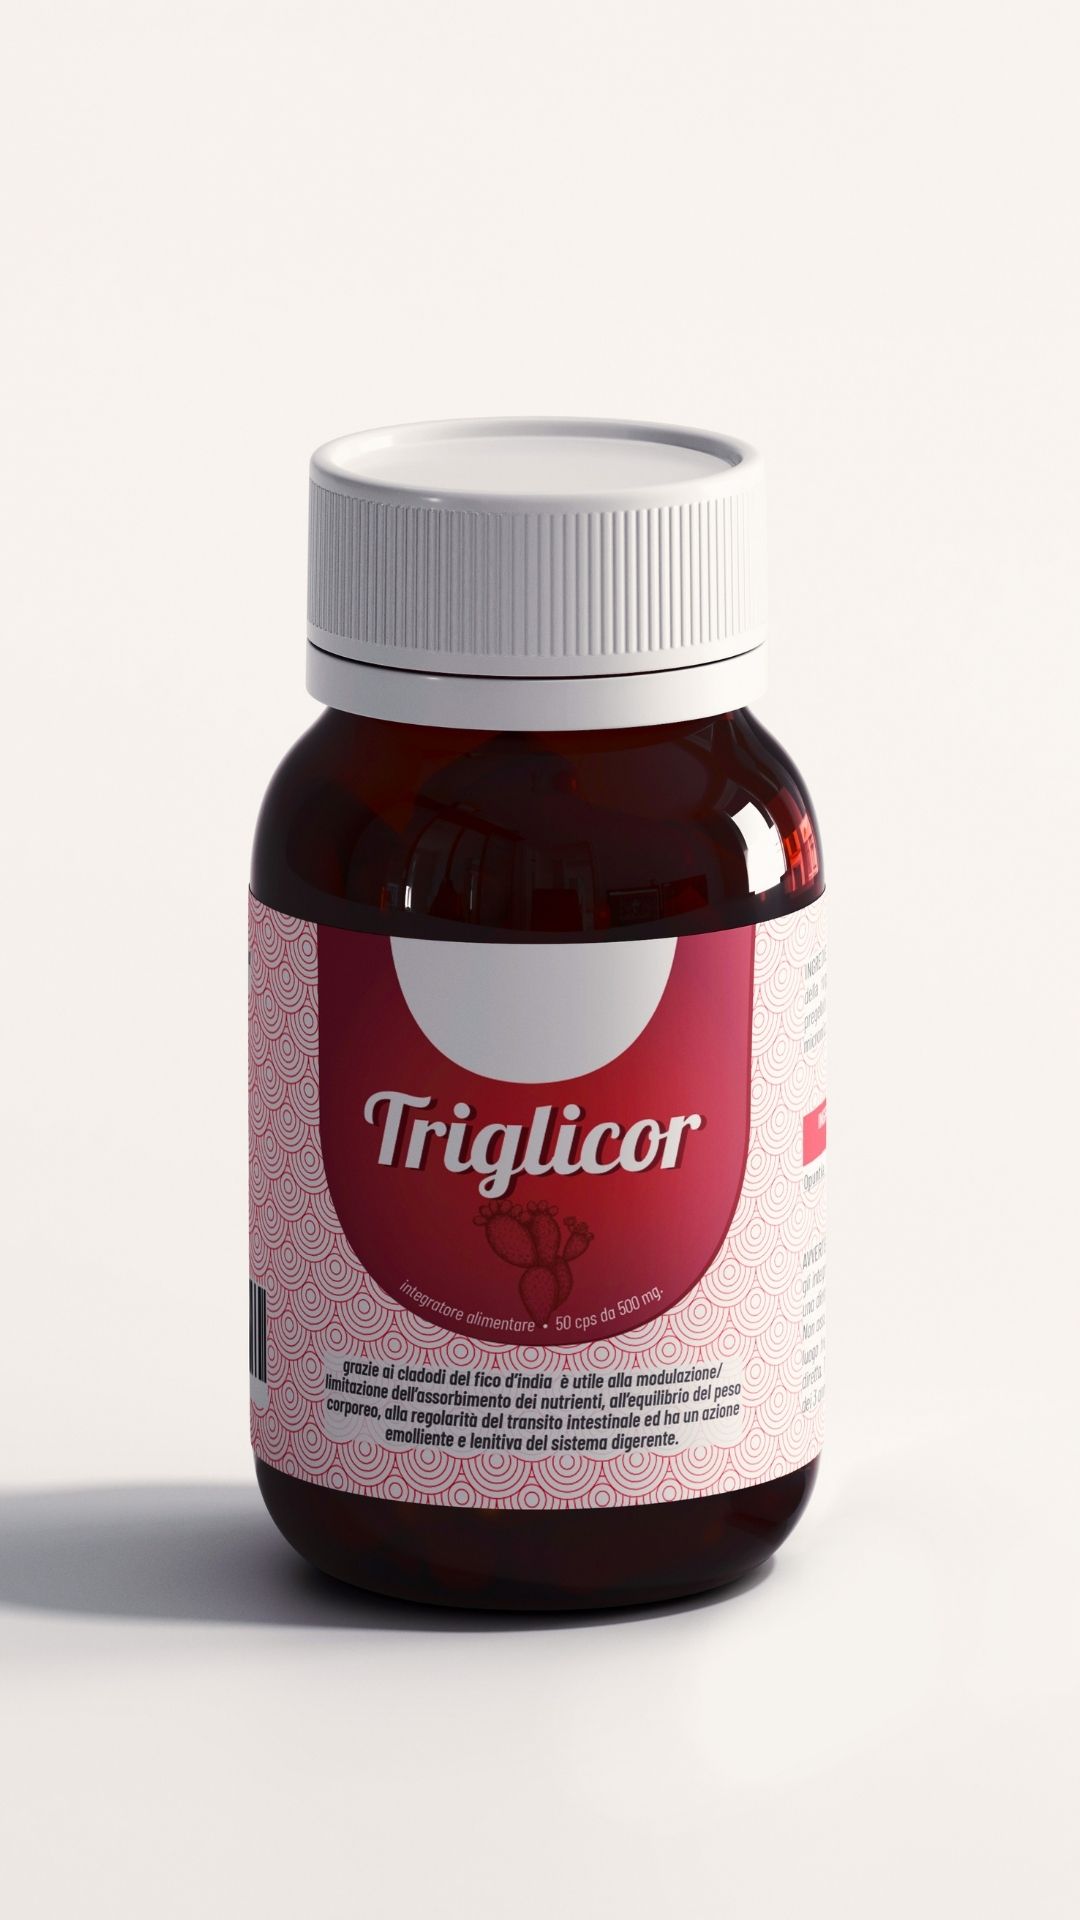 triglicor_1